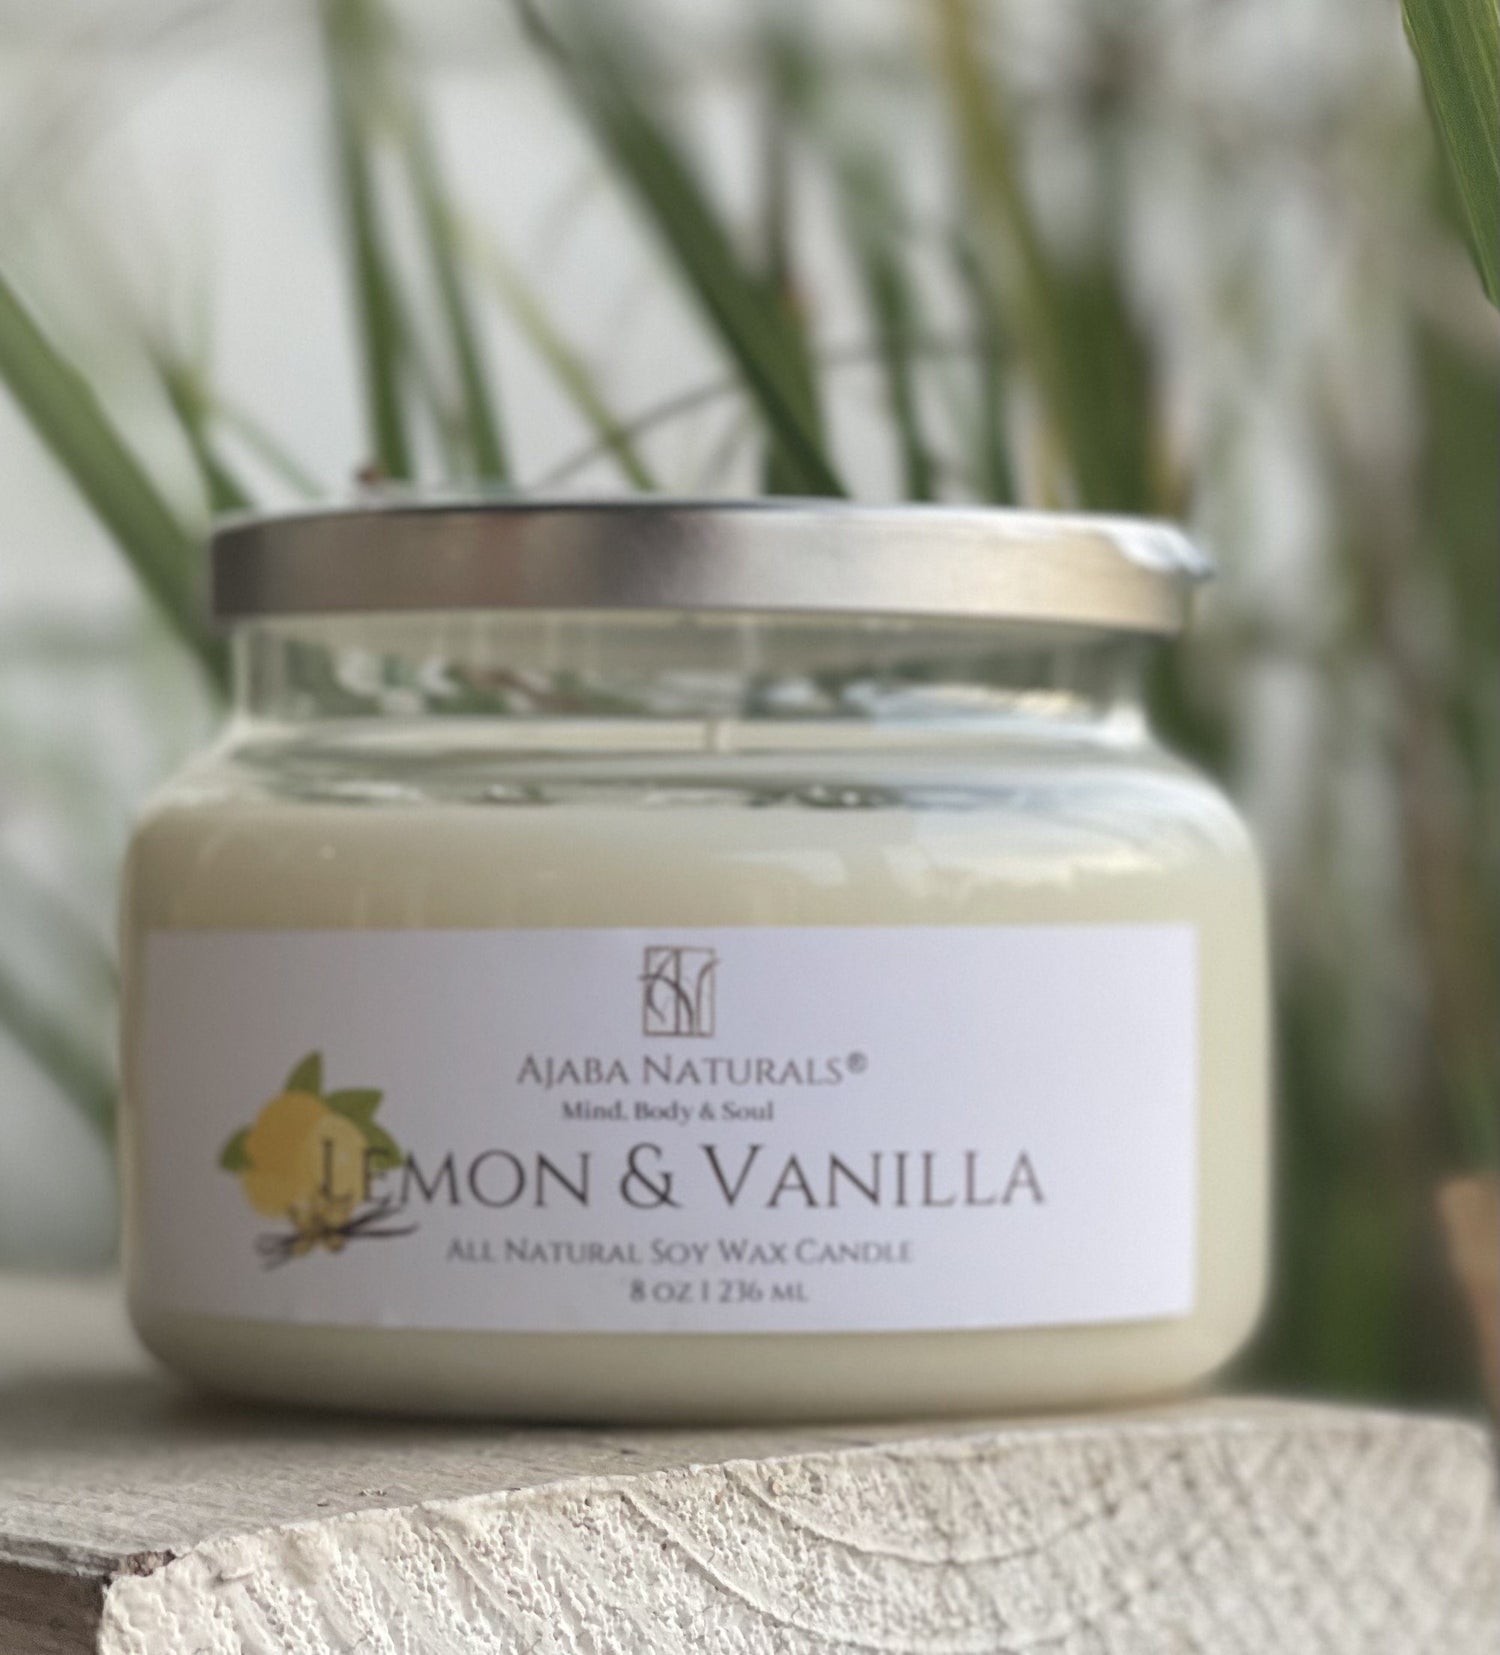 All Natural Lemon & Vanilla Soy Wax Candle AJABA NATURALS® 